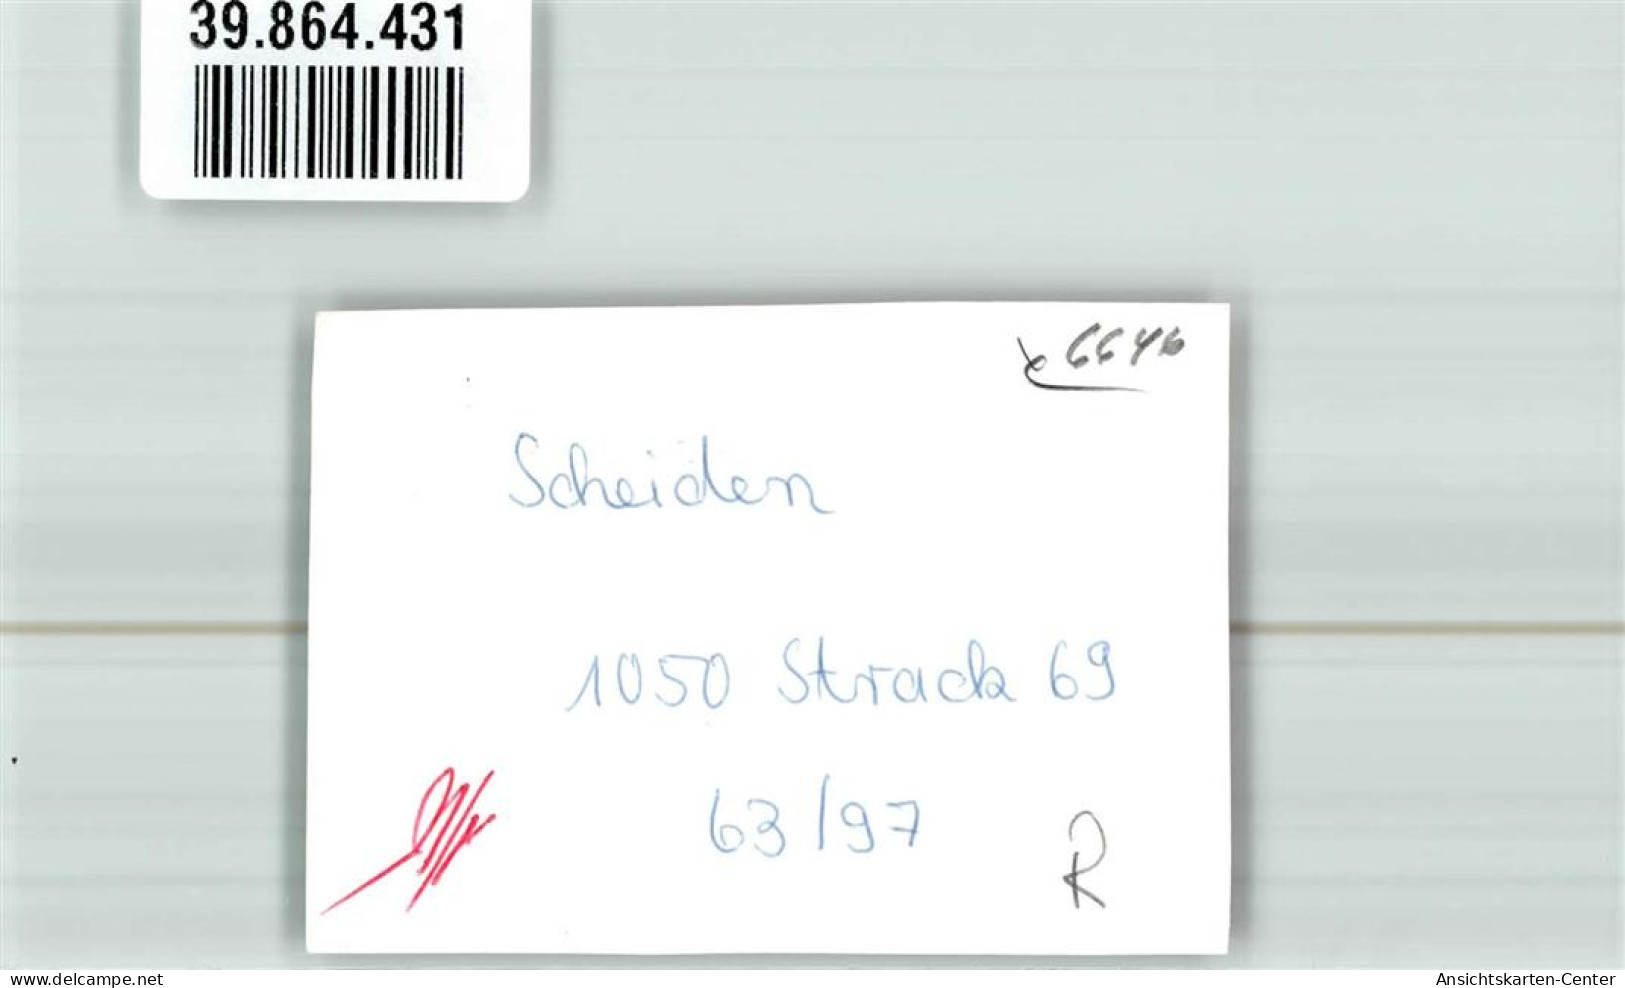 39864431 - Scheiden - Losheim